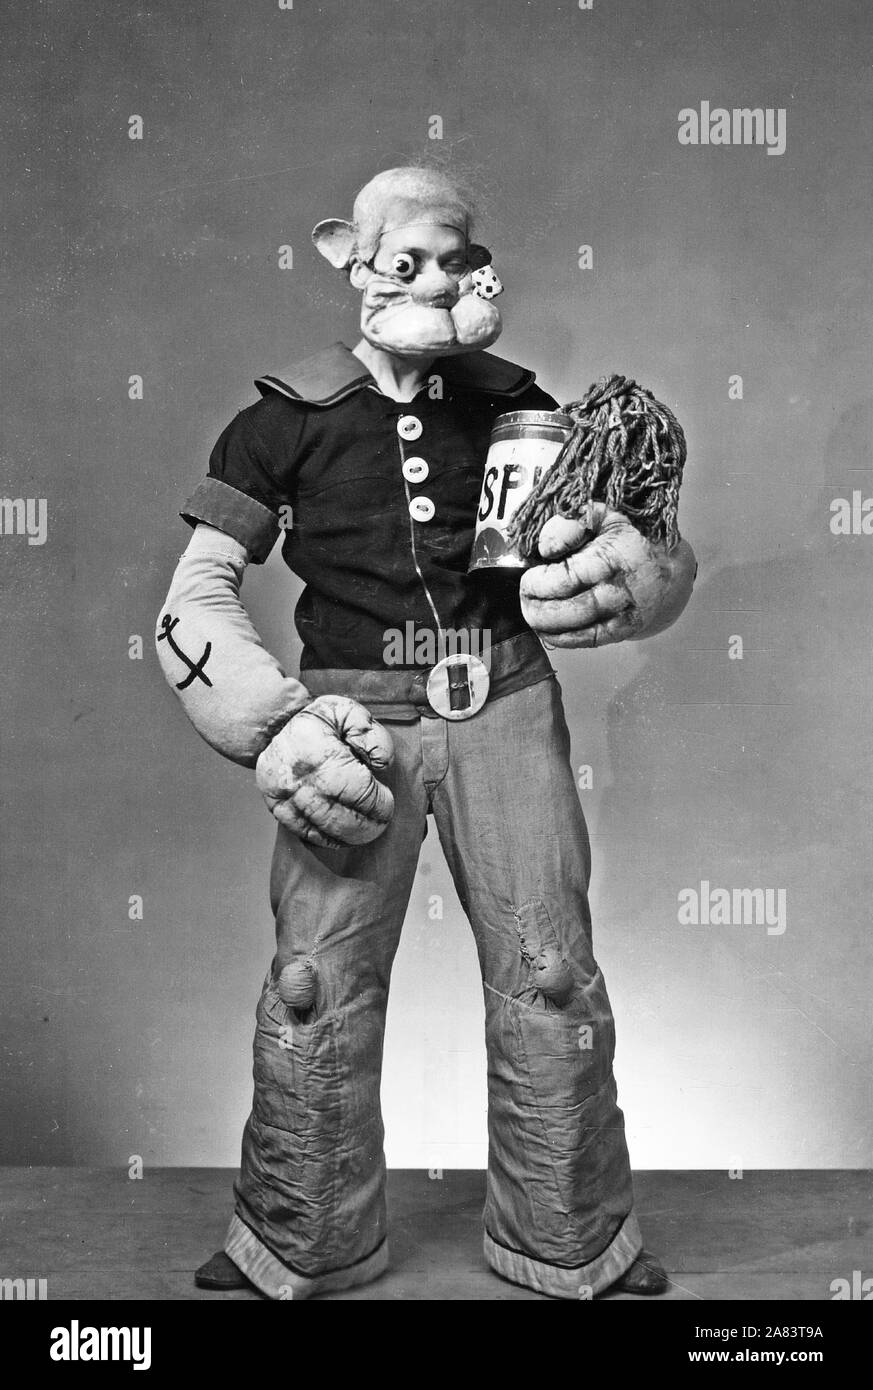 Intrattenitore degli anni '30 vestito come il personaggio di Popeye il Sailor Man (Jack Riano) Foto Stock